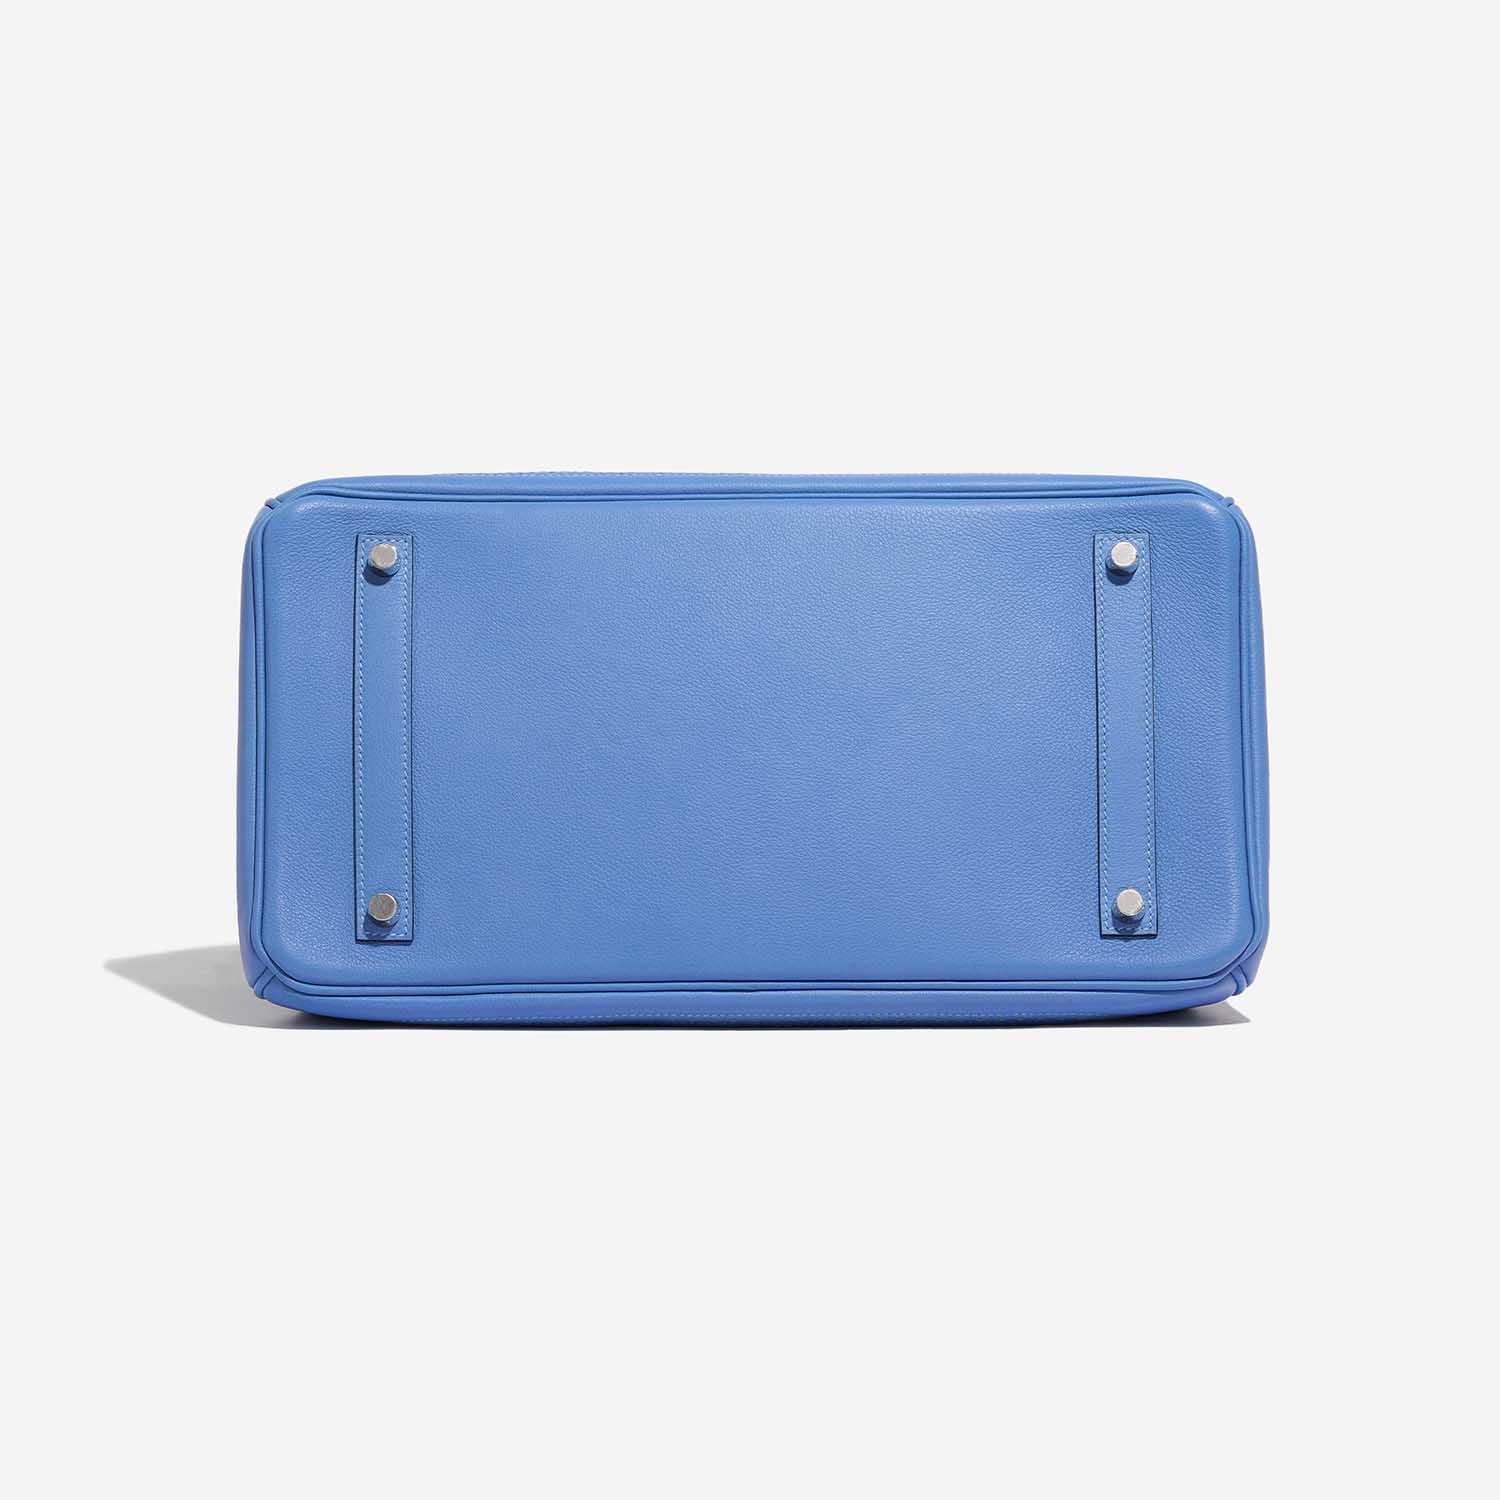 Hermes Birkin 35 Kushbel Blue France G engraved handbag bag blue 0058